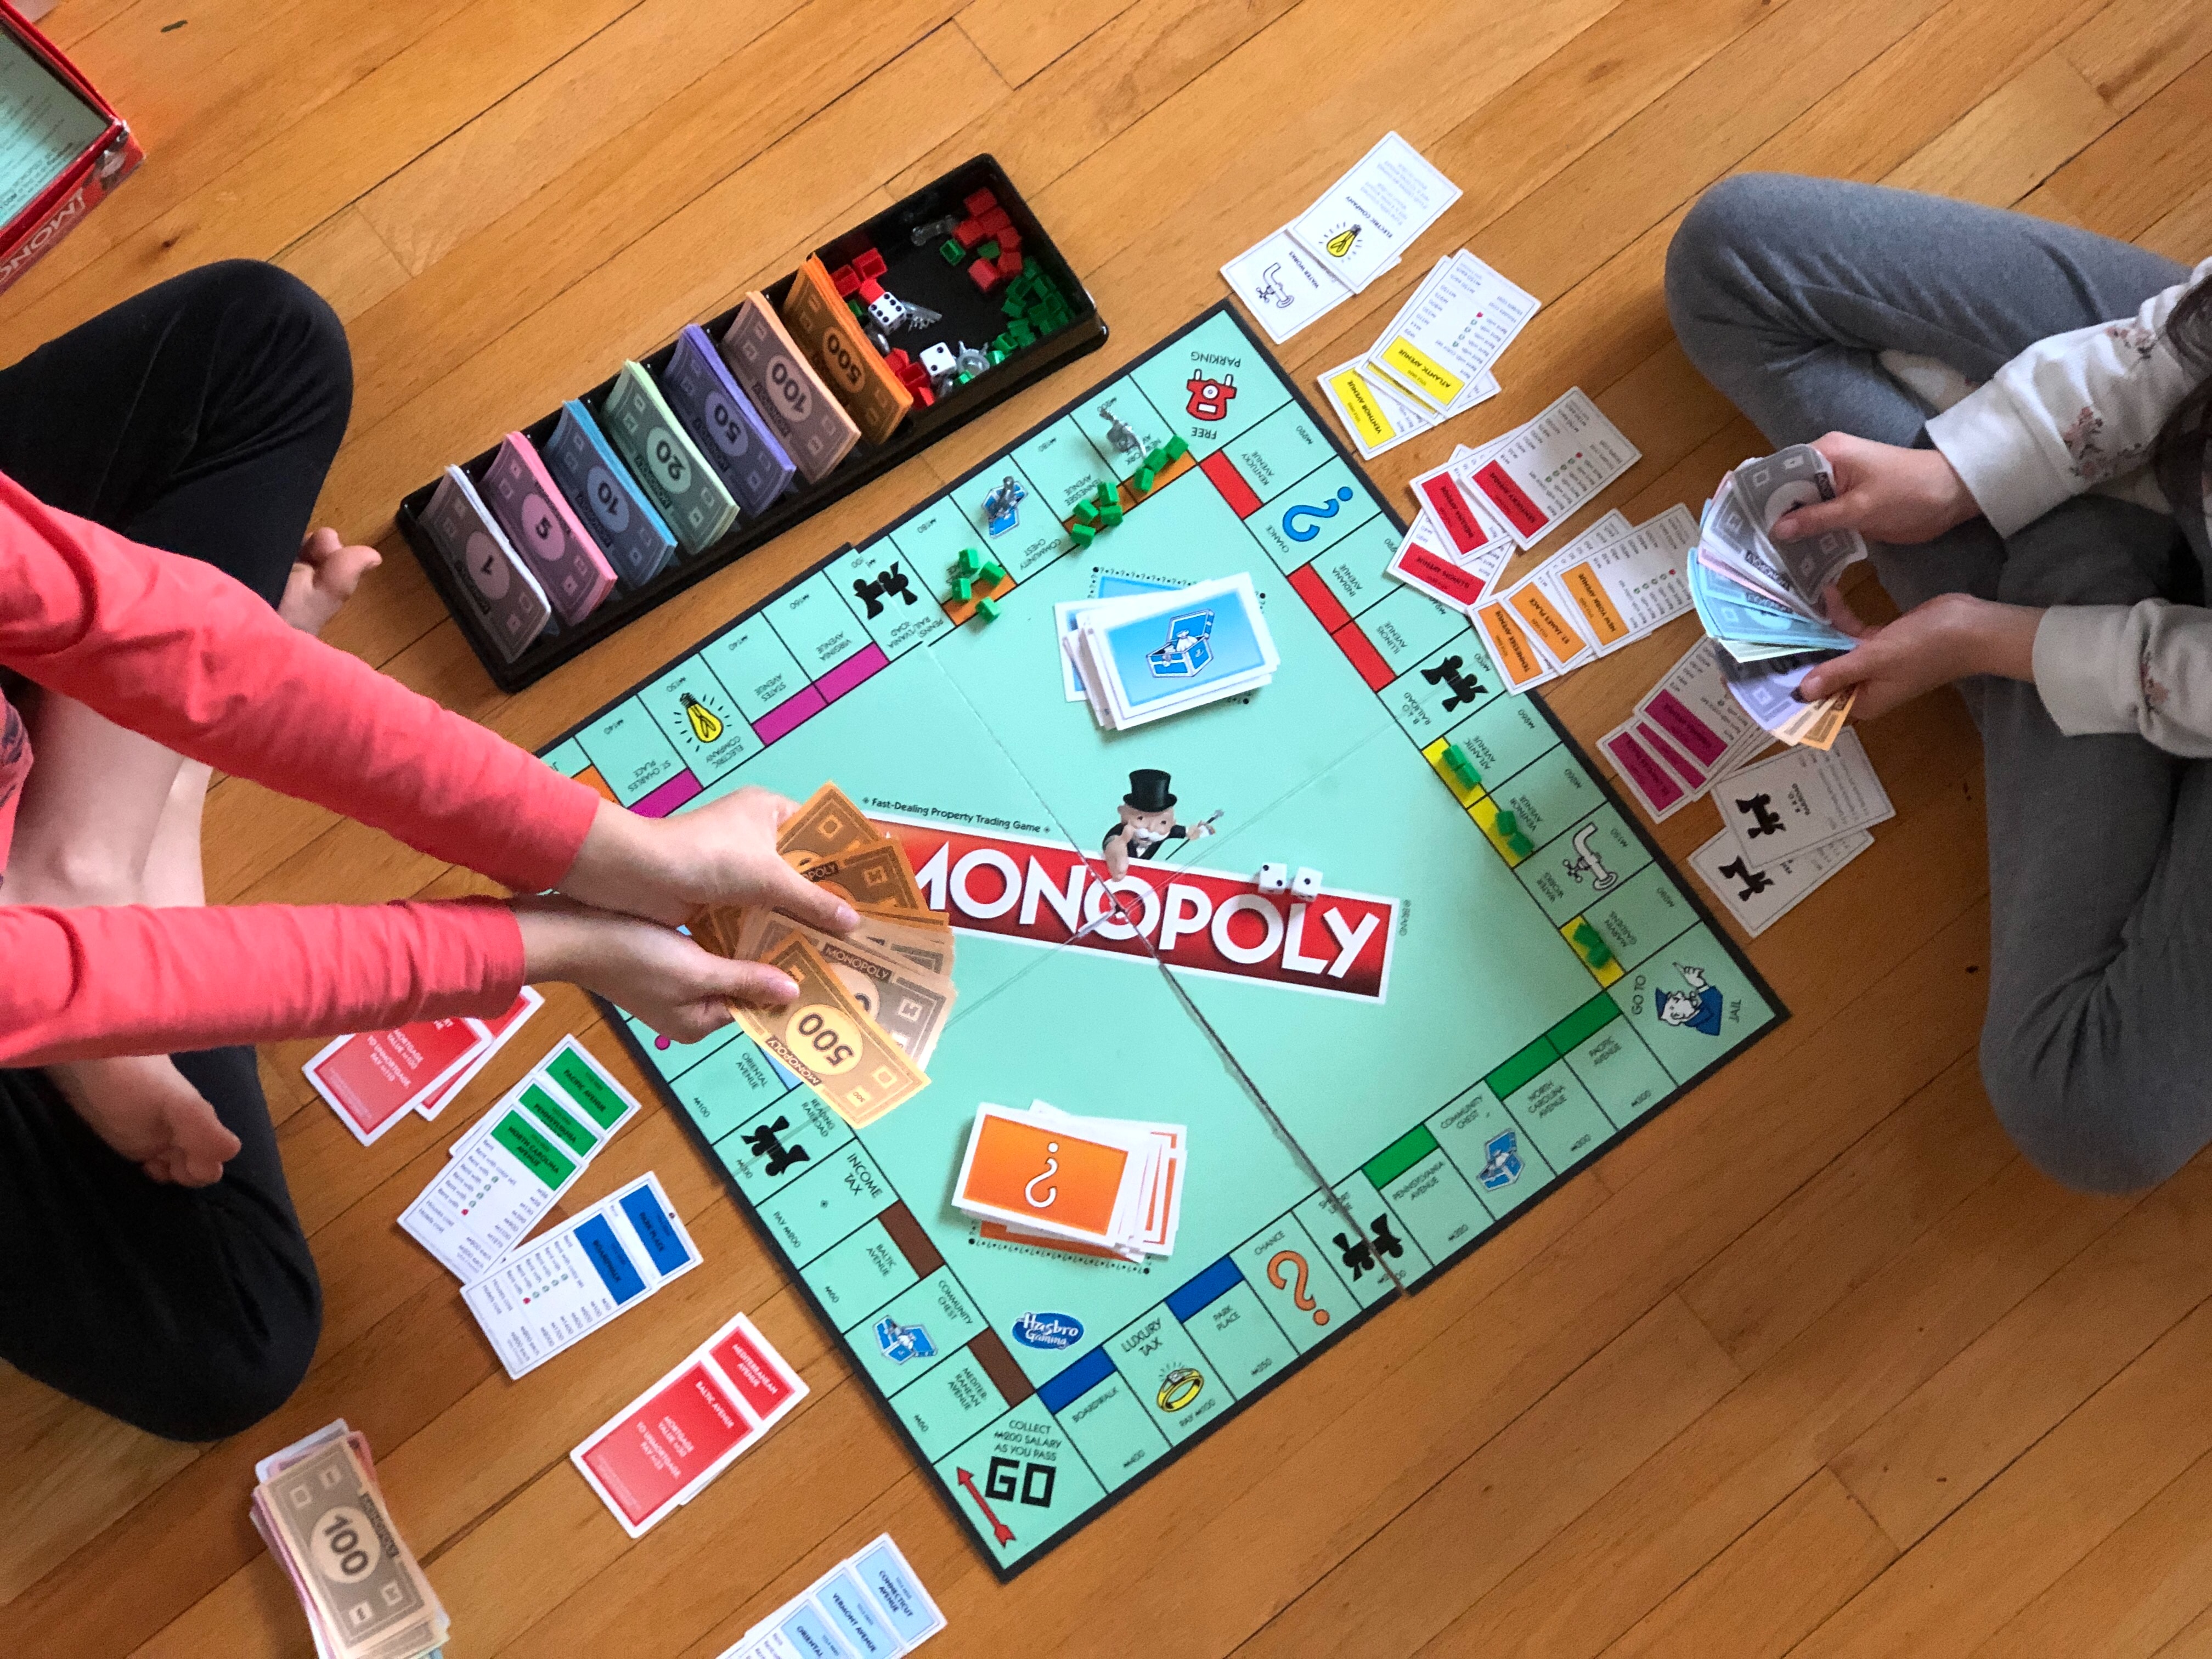 dvoje djece koji igraju igru monopoly